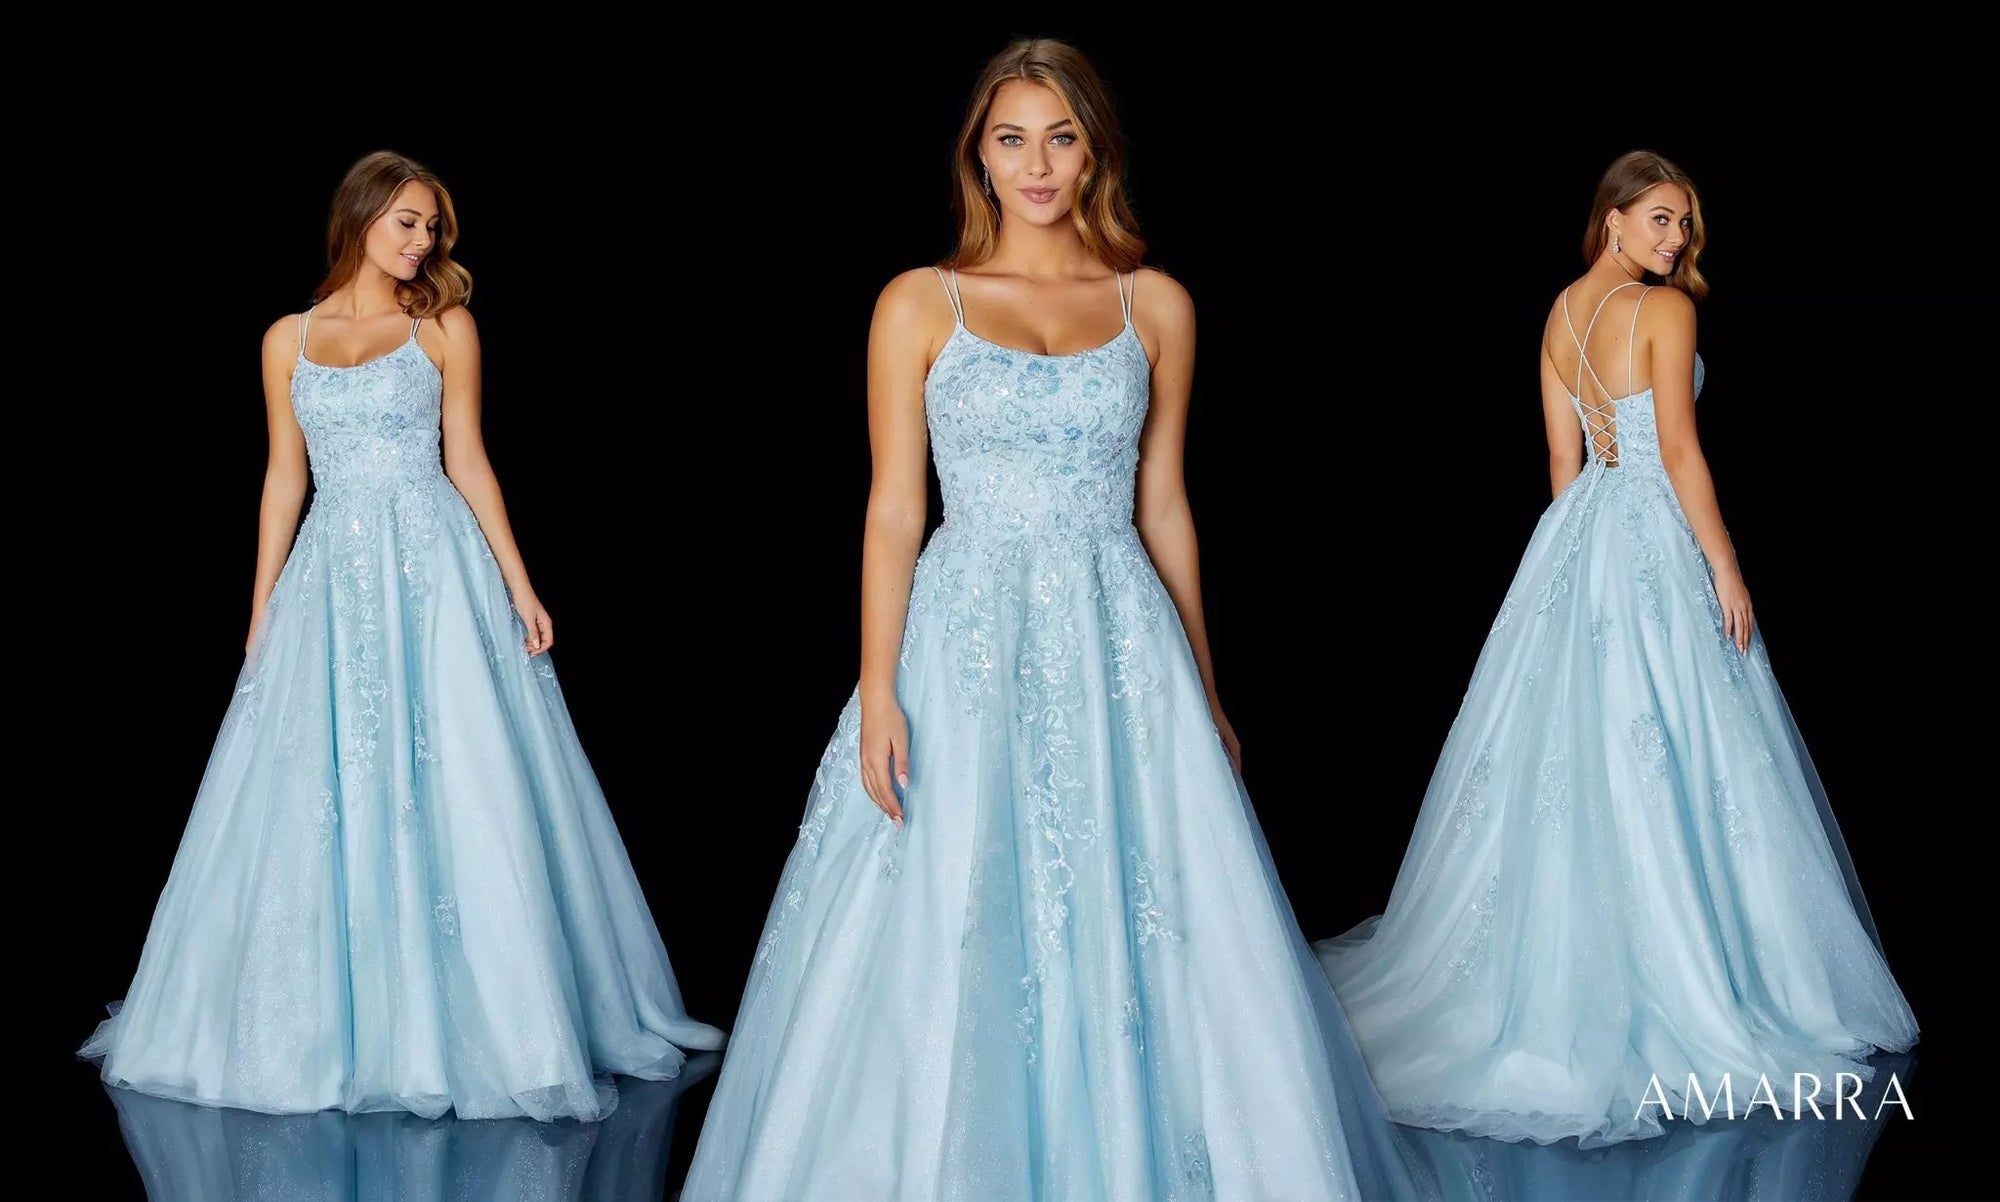 4 Trending Blue Prom Dresses